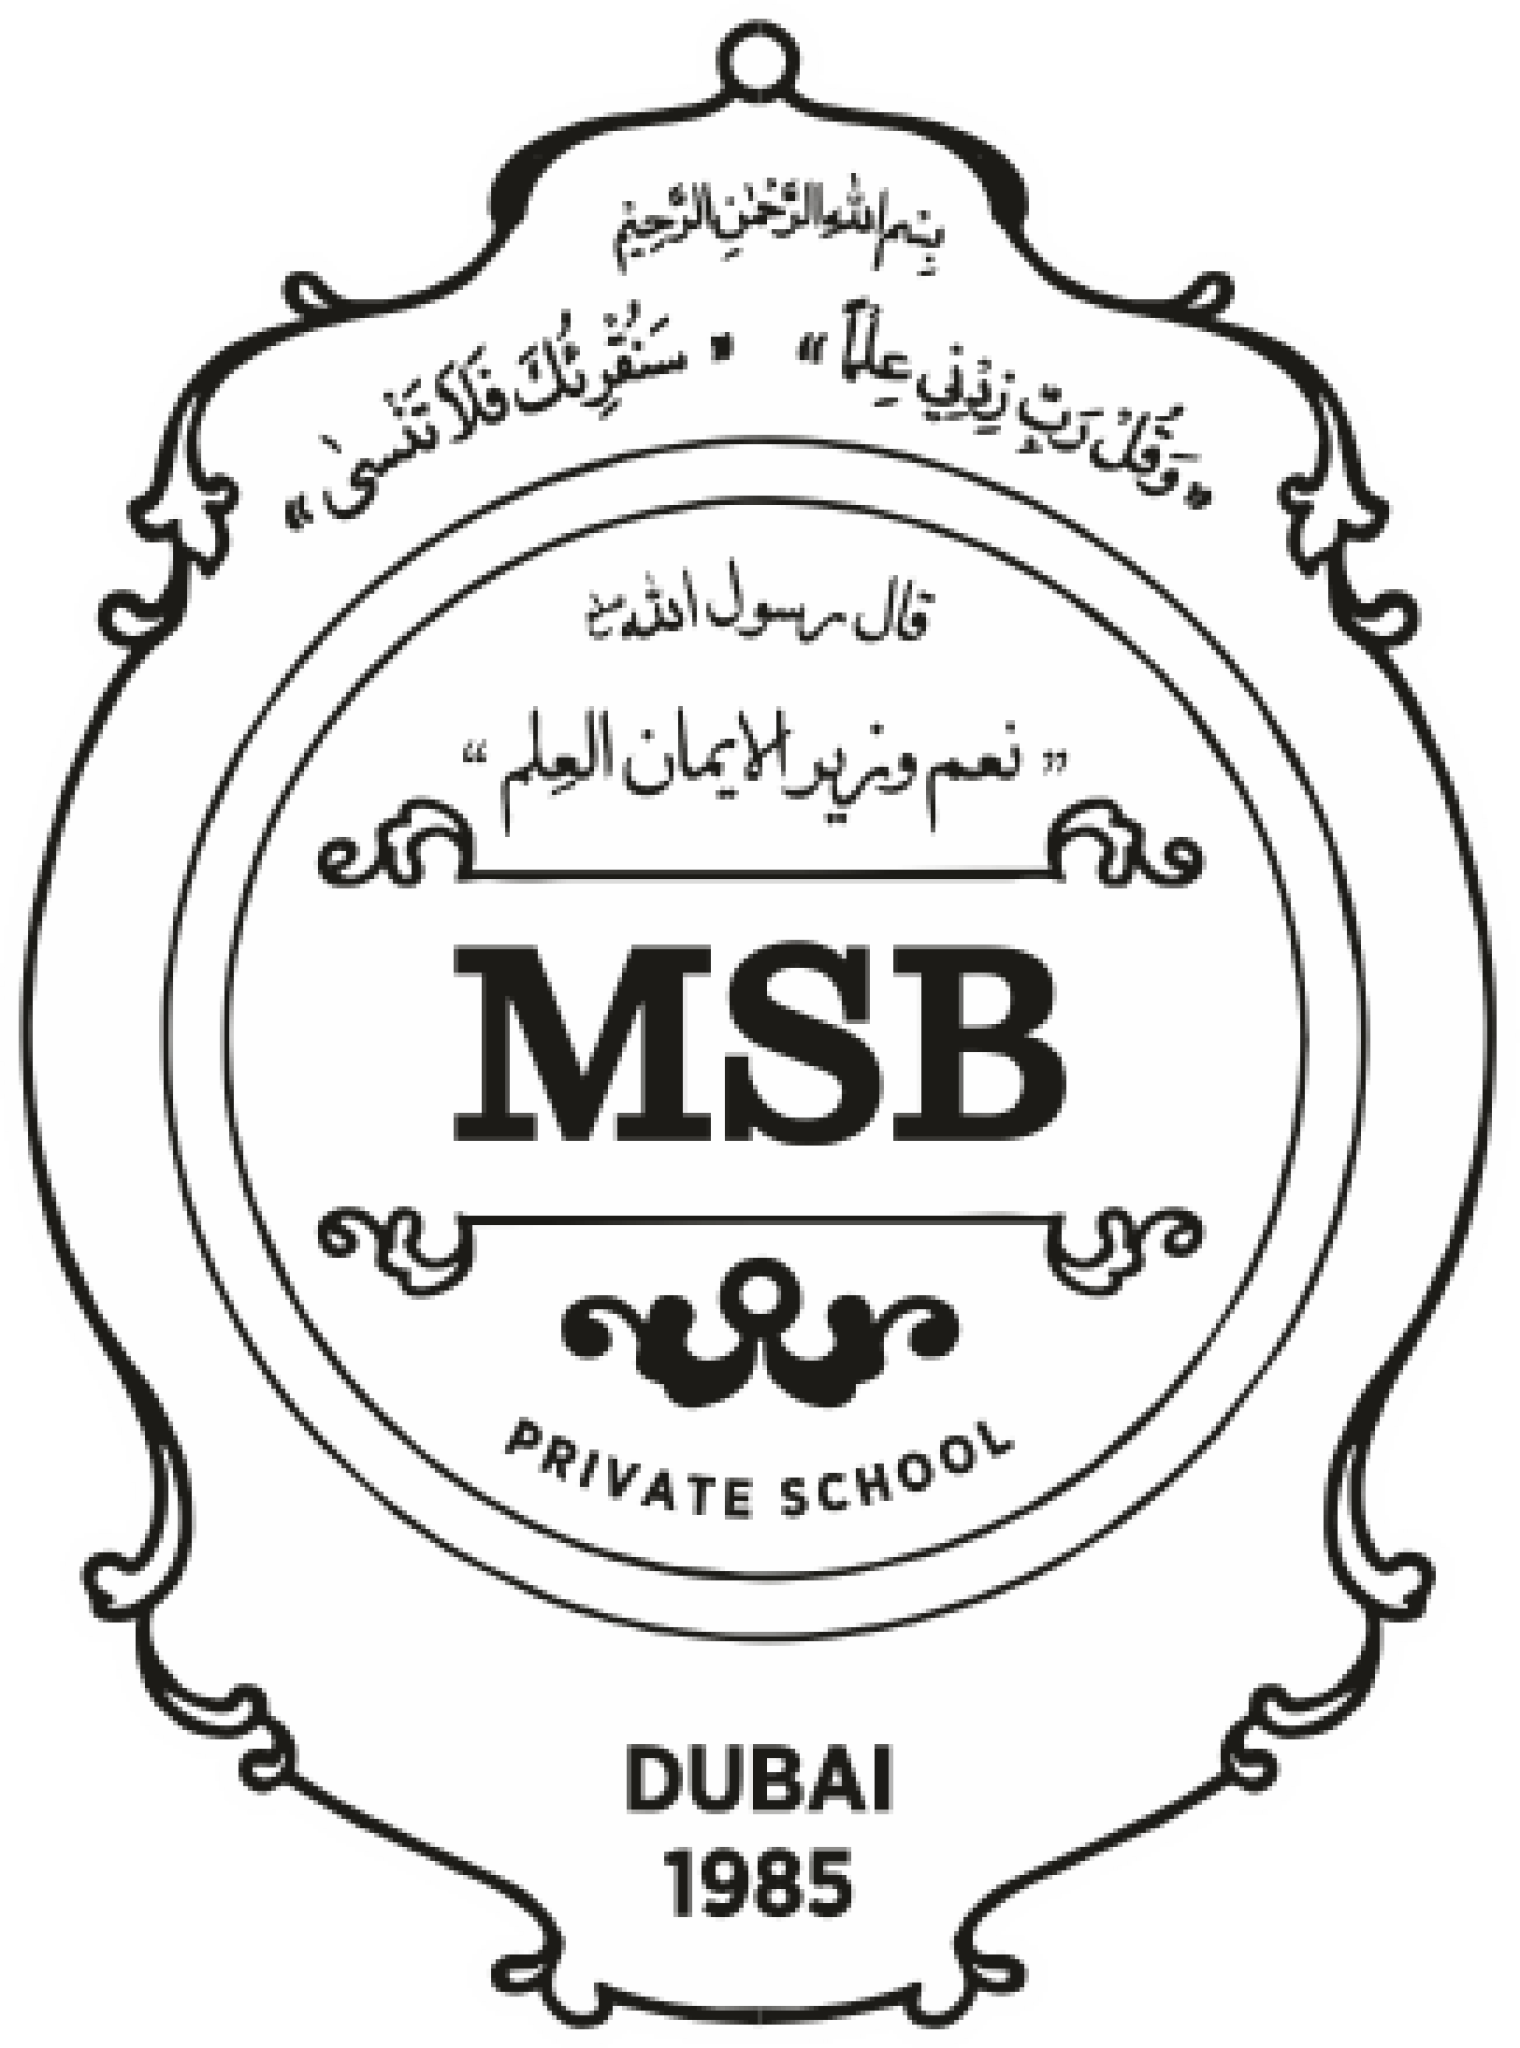 MSB Private School